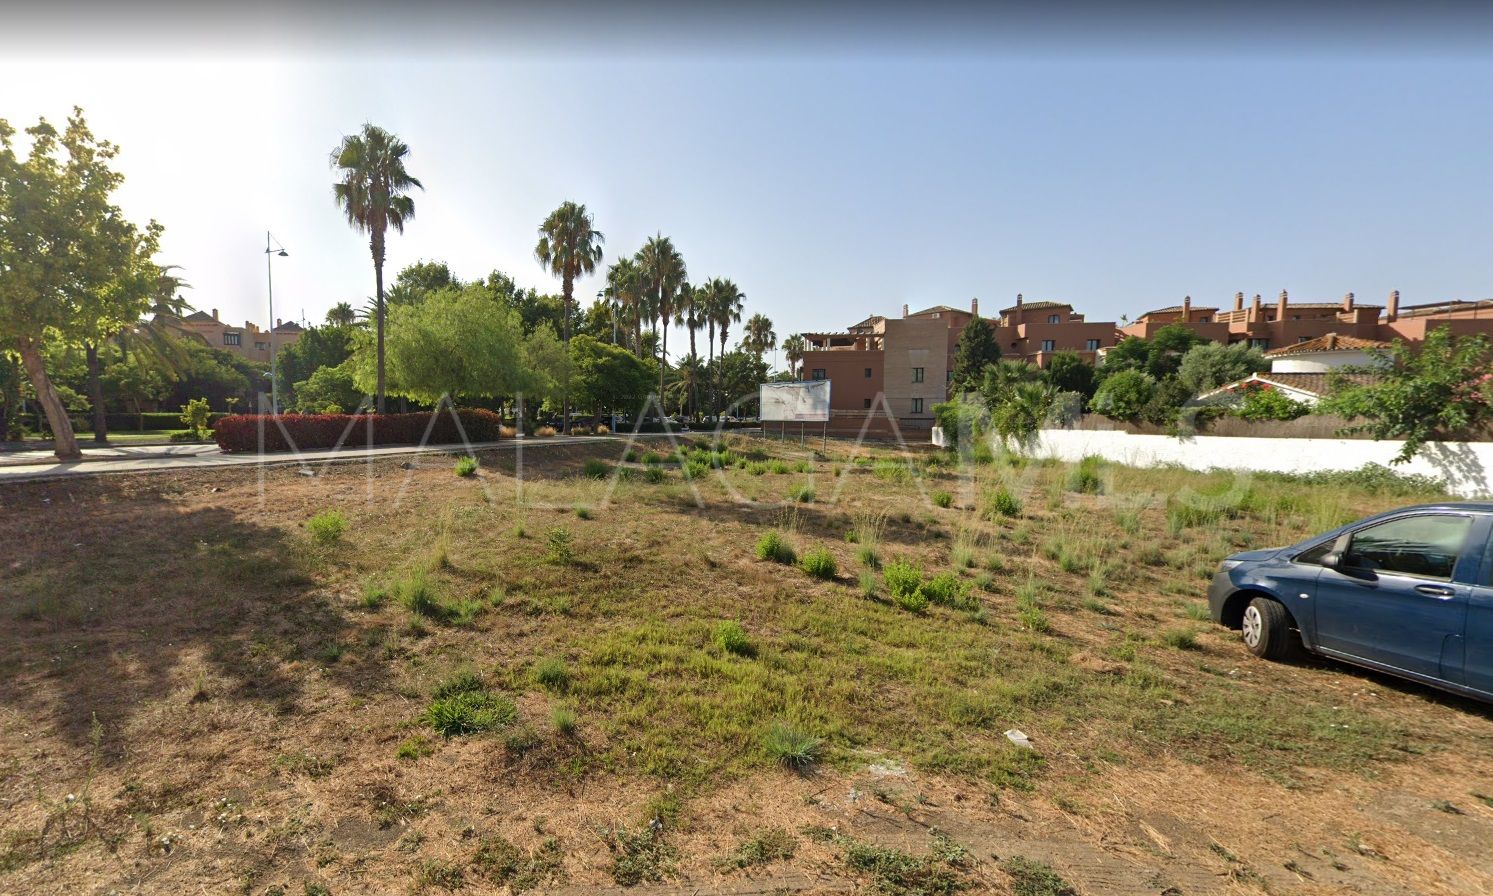 For sale plot in Linda Vista Baja